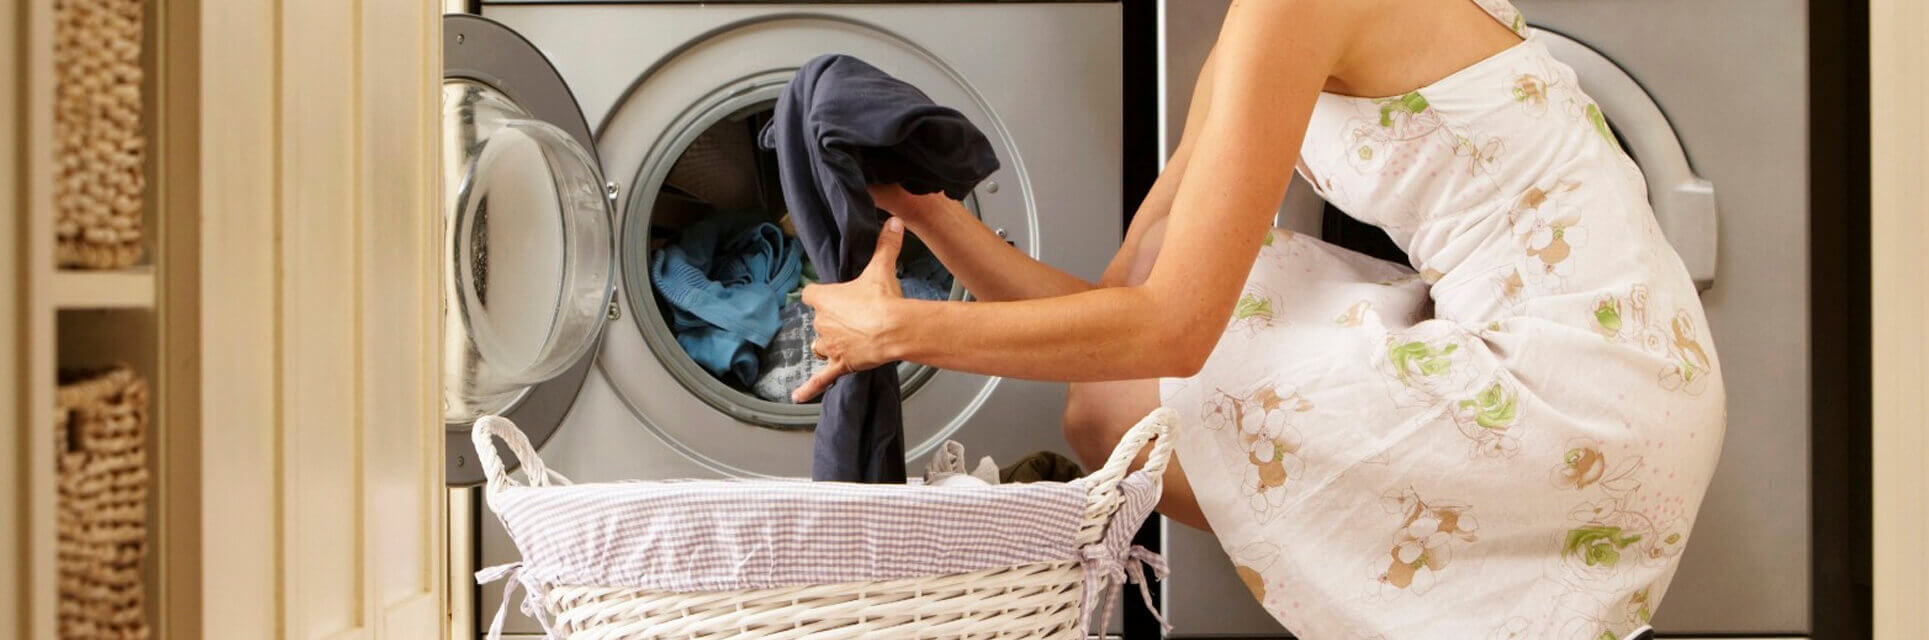 Servicio técnico lavadoras indesit